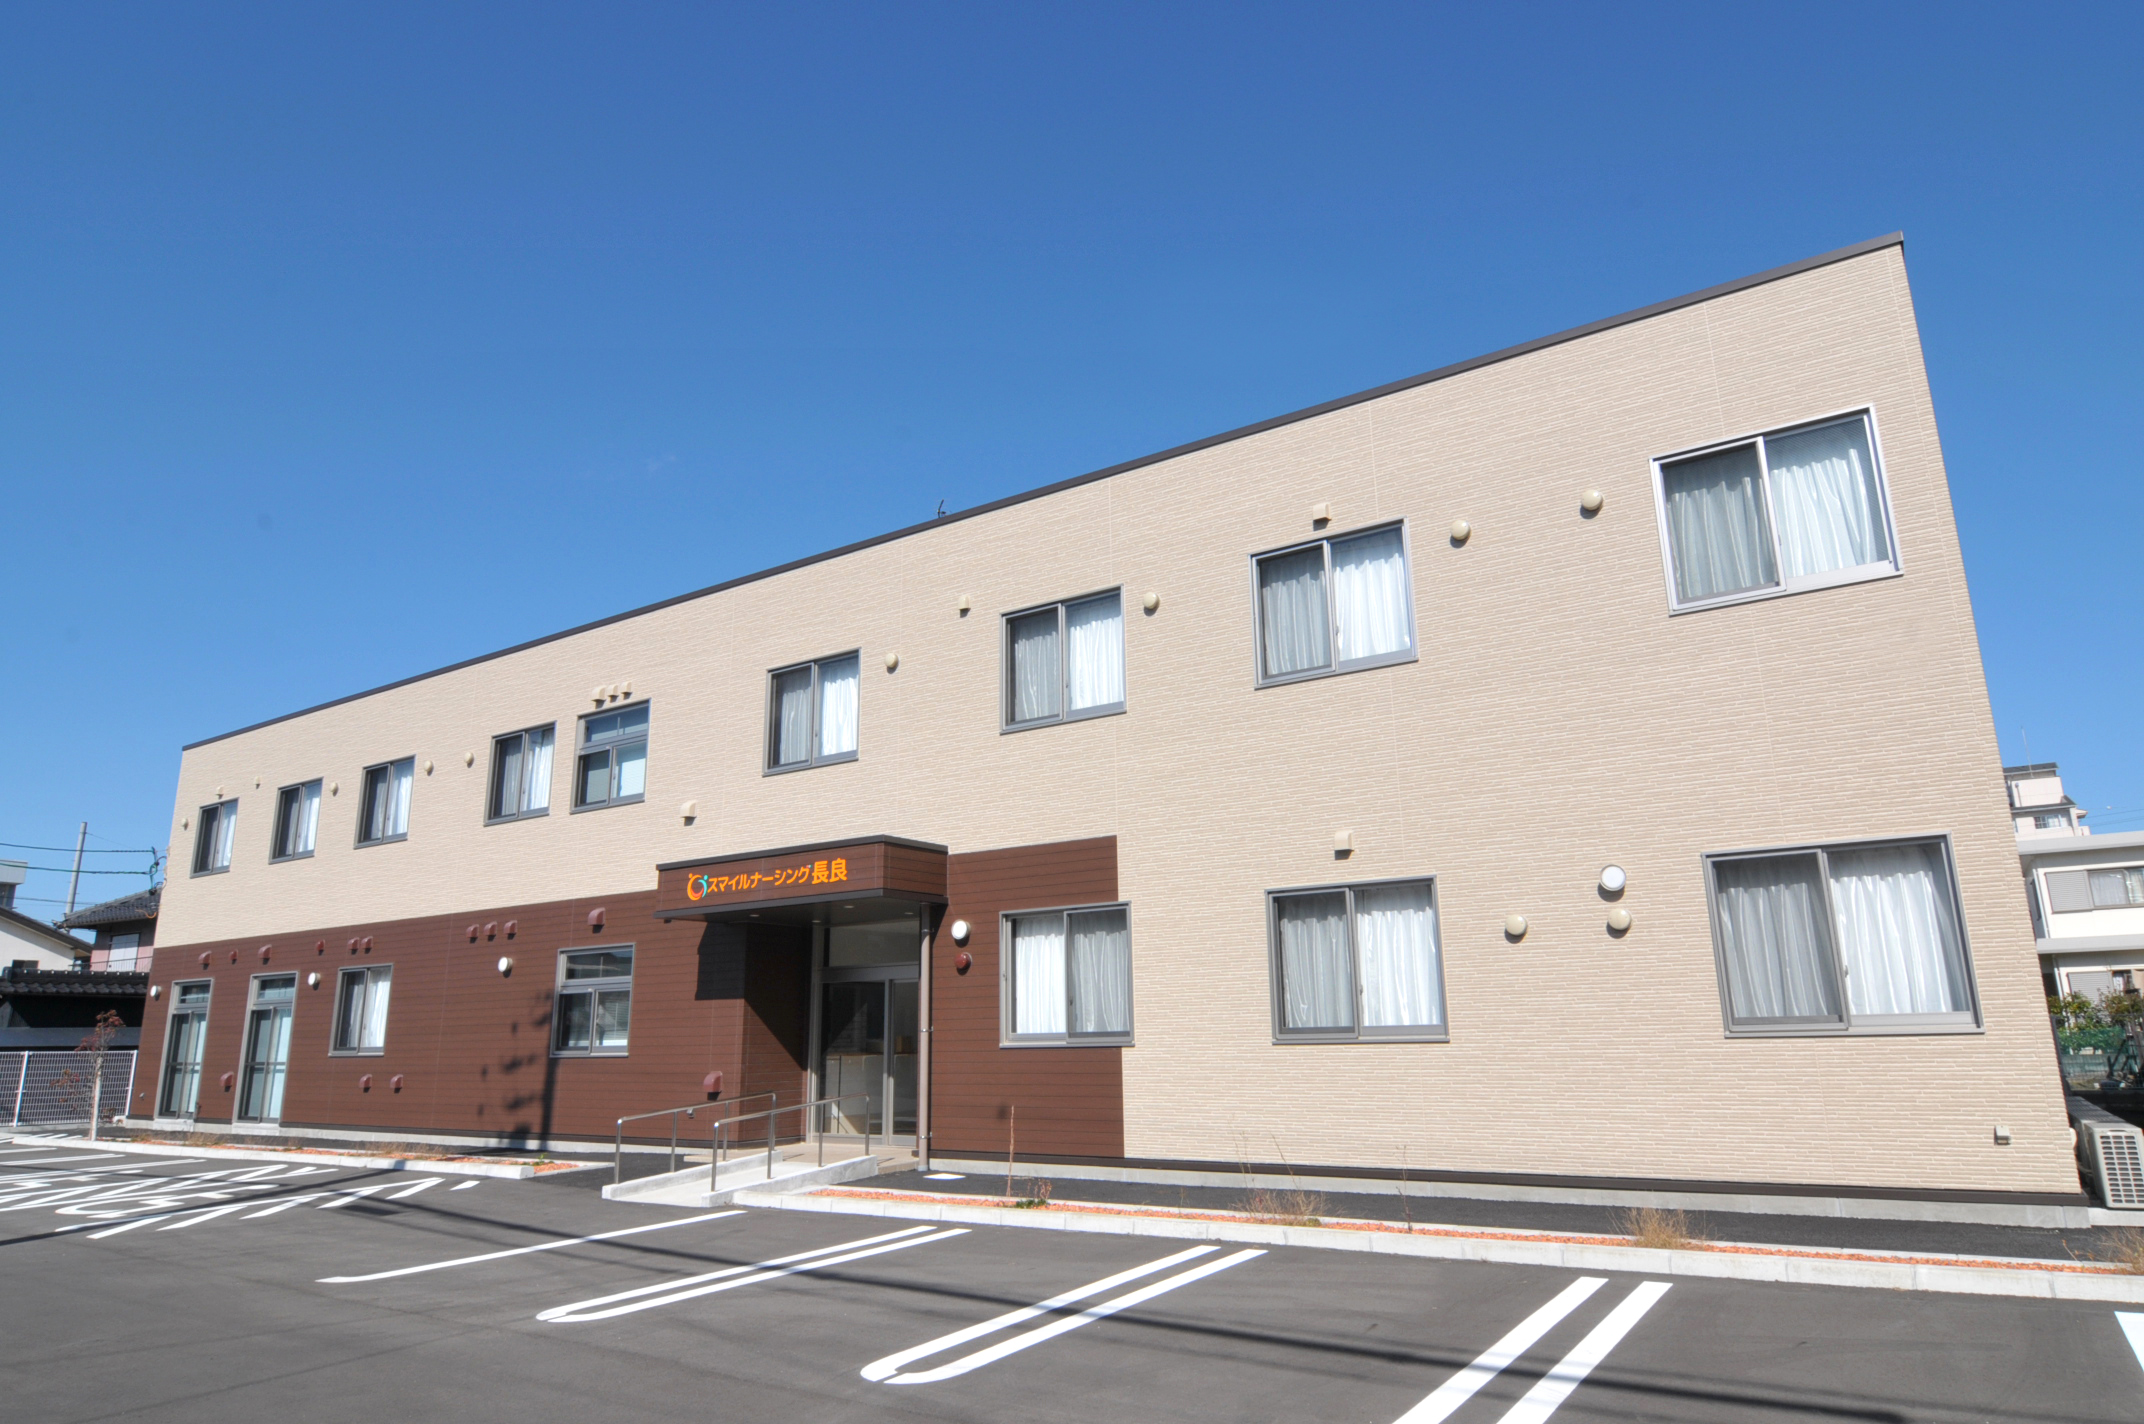 公式 スマイルナーシング長良 岐阜市 岐阜市の24時間医療対応型の有料老人ホーム ナーシングホーム